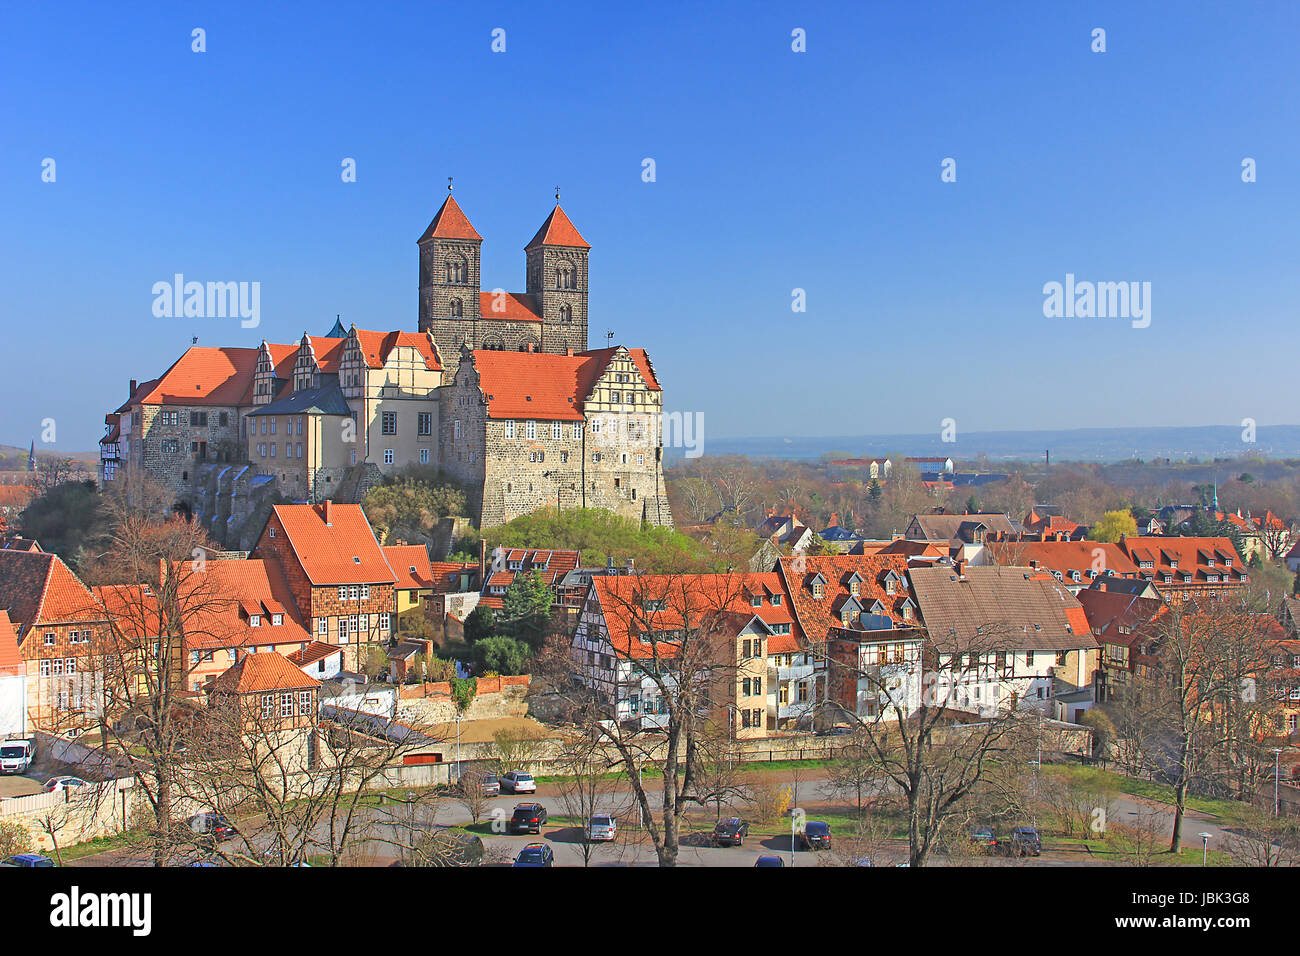 Der Schlossberg von Quedlinburg mit der Stiftskirche St. Servatii und den Stiftsgebäuden, Sachsen-Anhalt, Deutschland Stock Photo